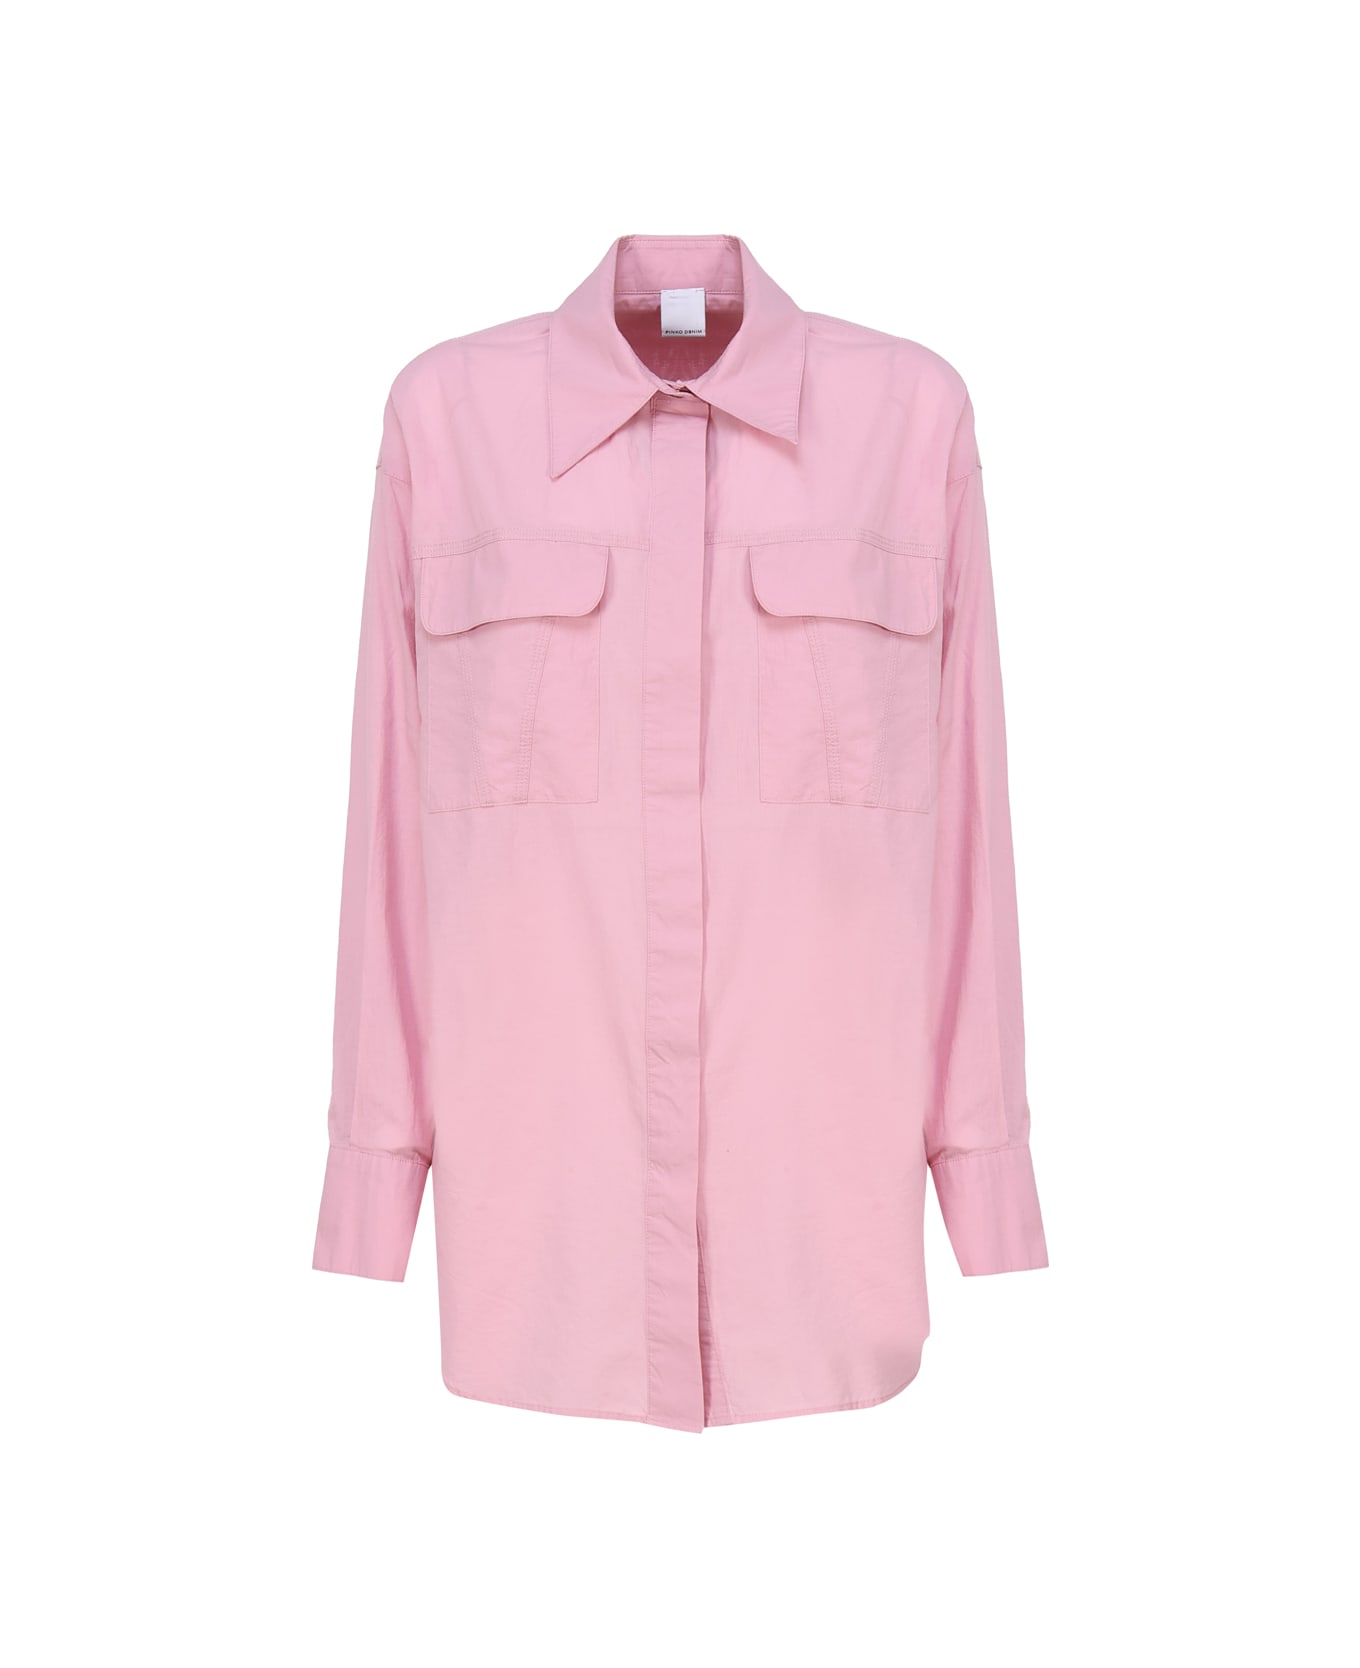 Pinko Cotton Shirt - Pink シャツ